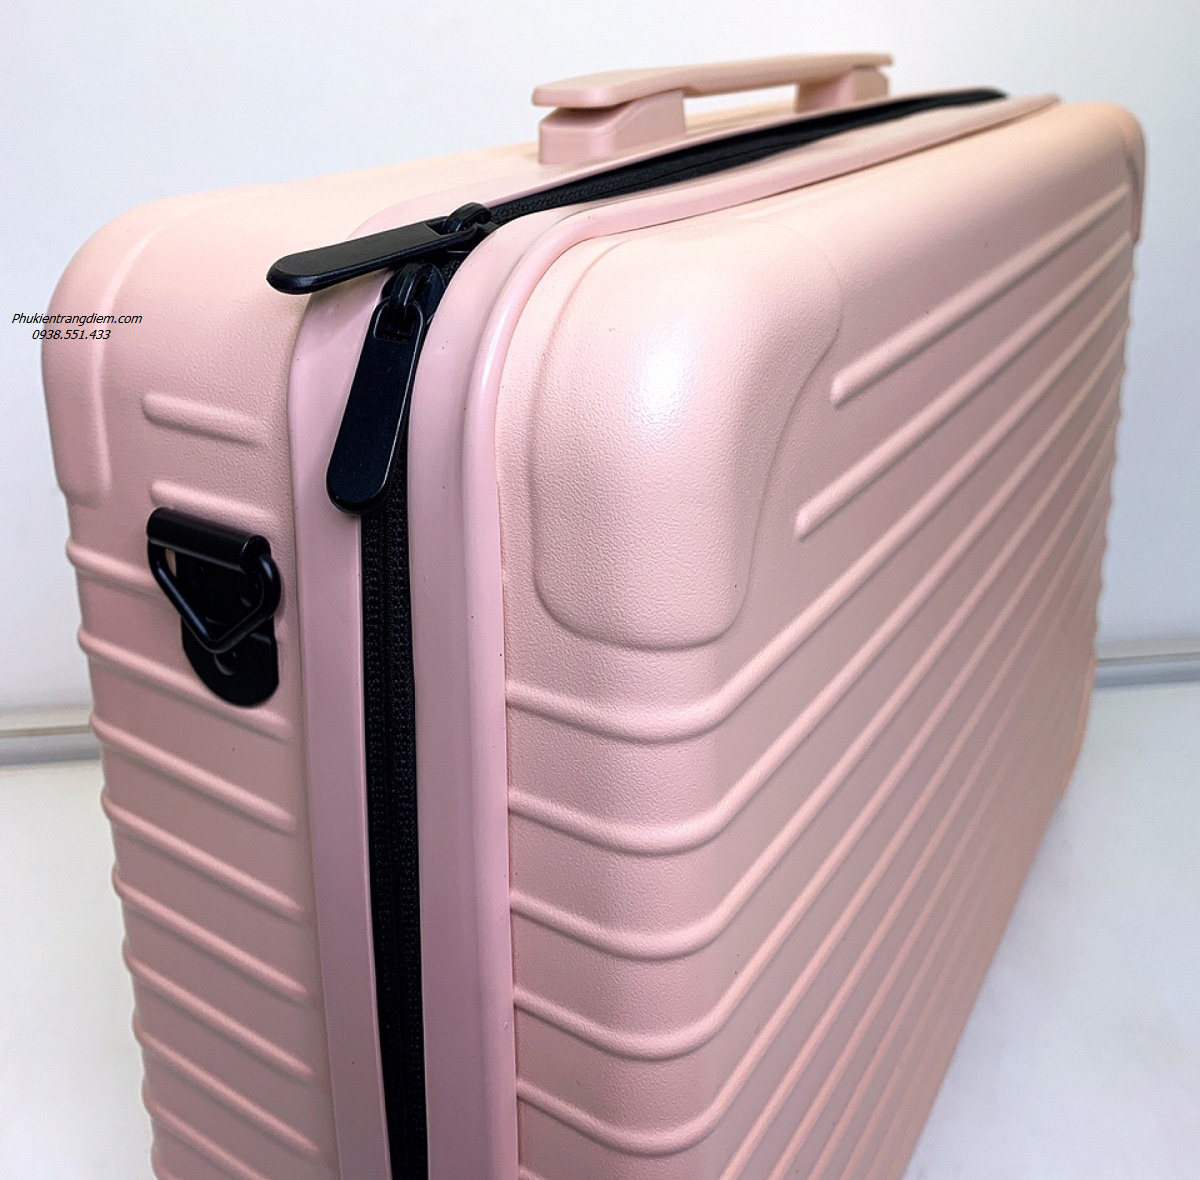 vali cốp trang điểm vỏ trơn 3 màu cao cấp